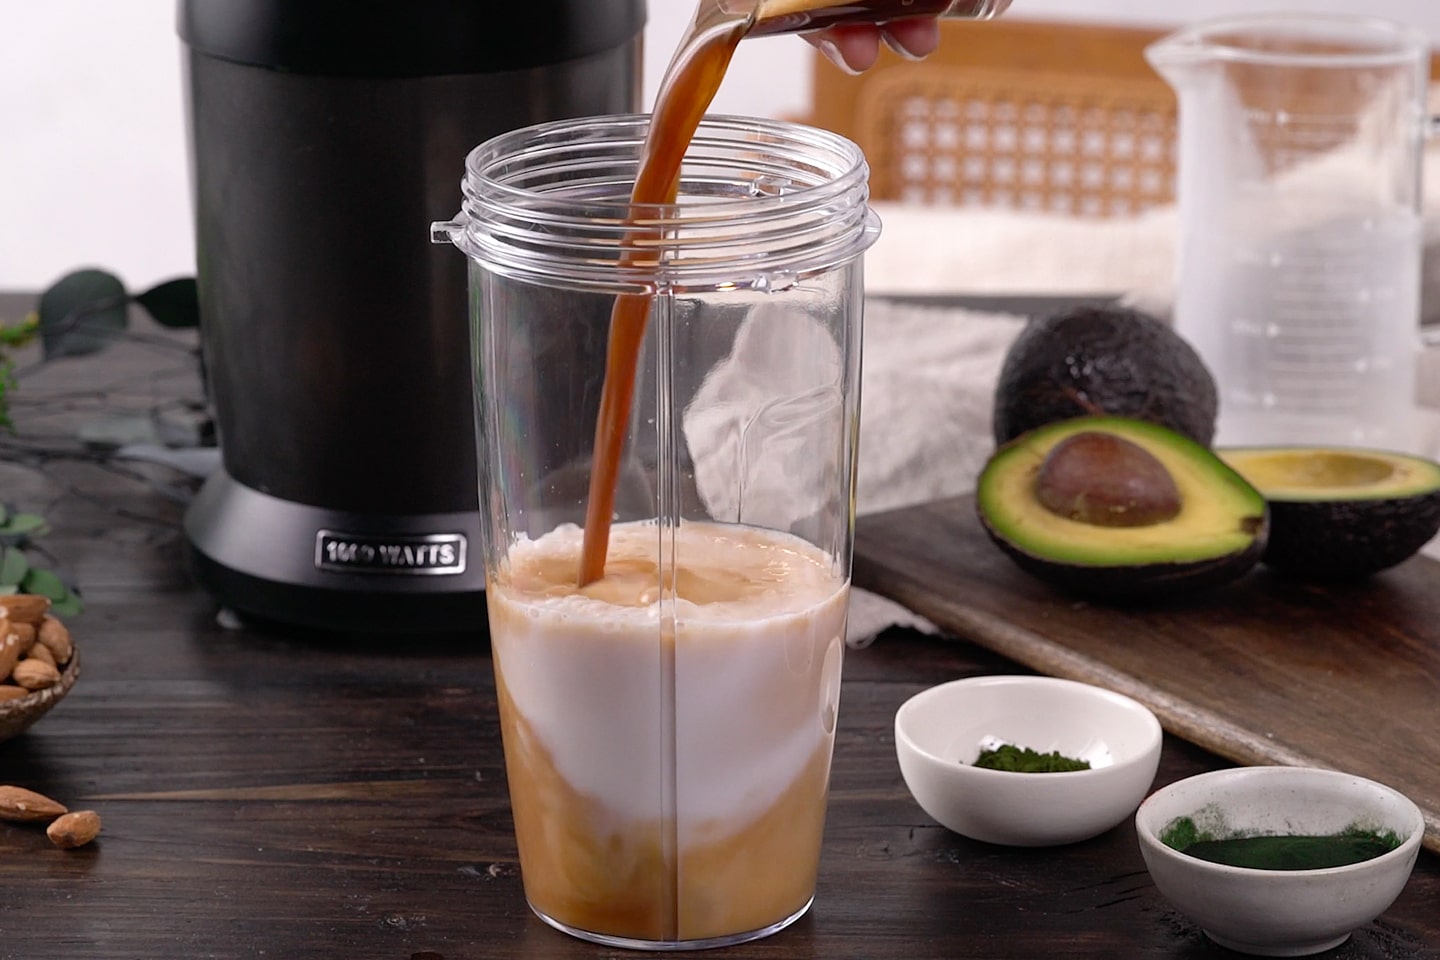 Voor de groene coffee smoothie met superfoods spirulina, chlorella en avocado wordt koffie bij de kokosmelk gegoten